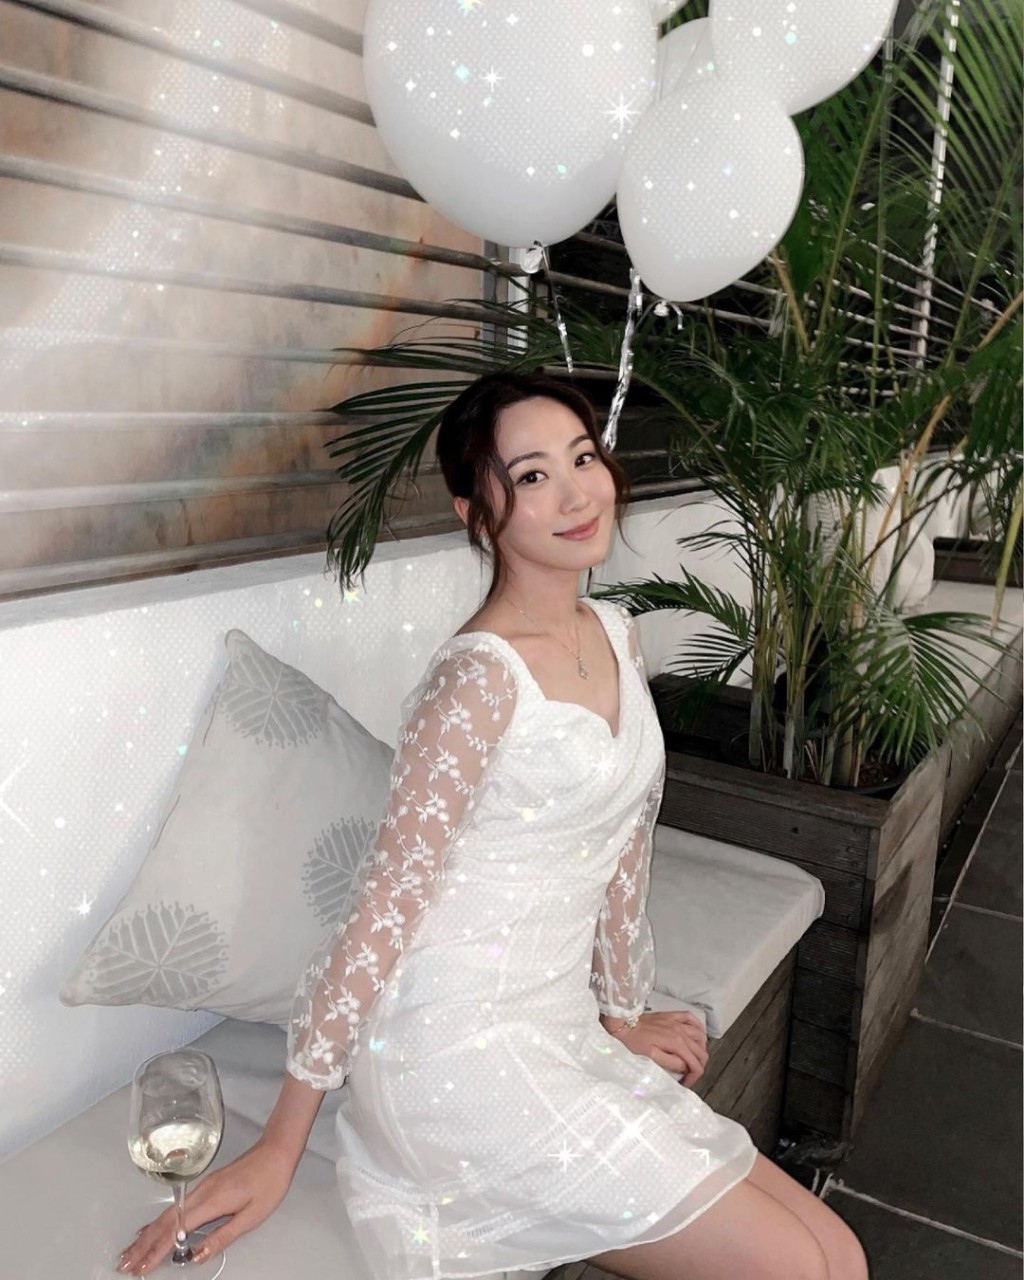 程皓是《2016年度香港小姐竞选》20强佳丽。